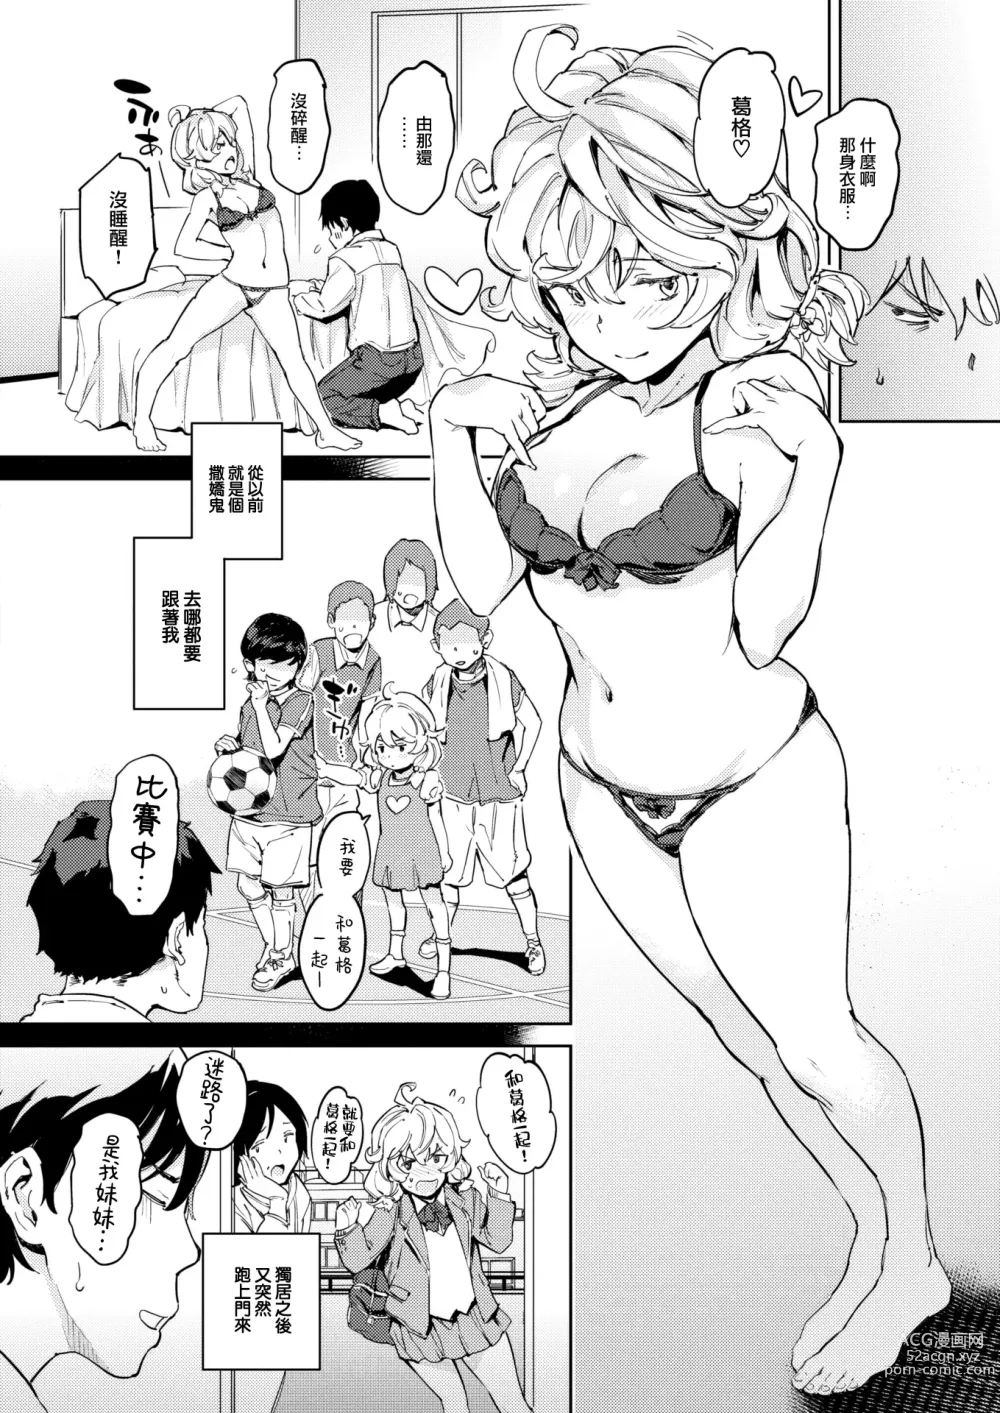 Page 3 of manga Imouto Jigoku